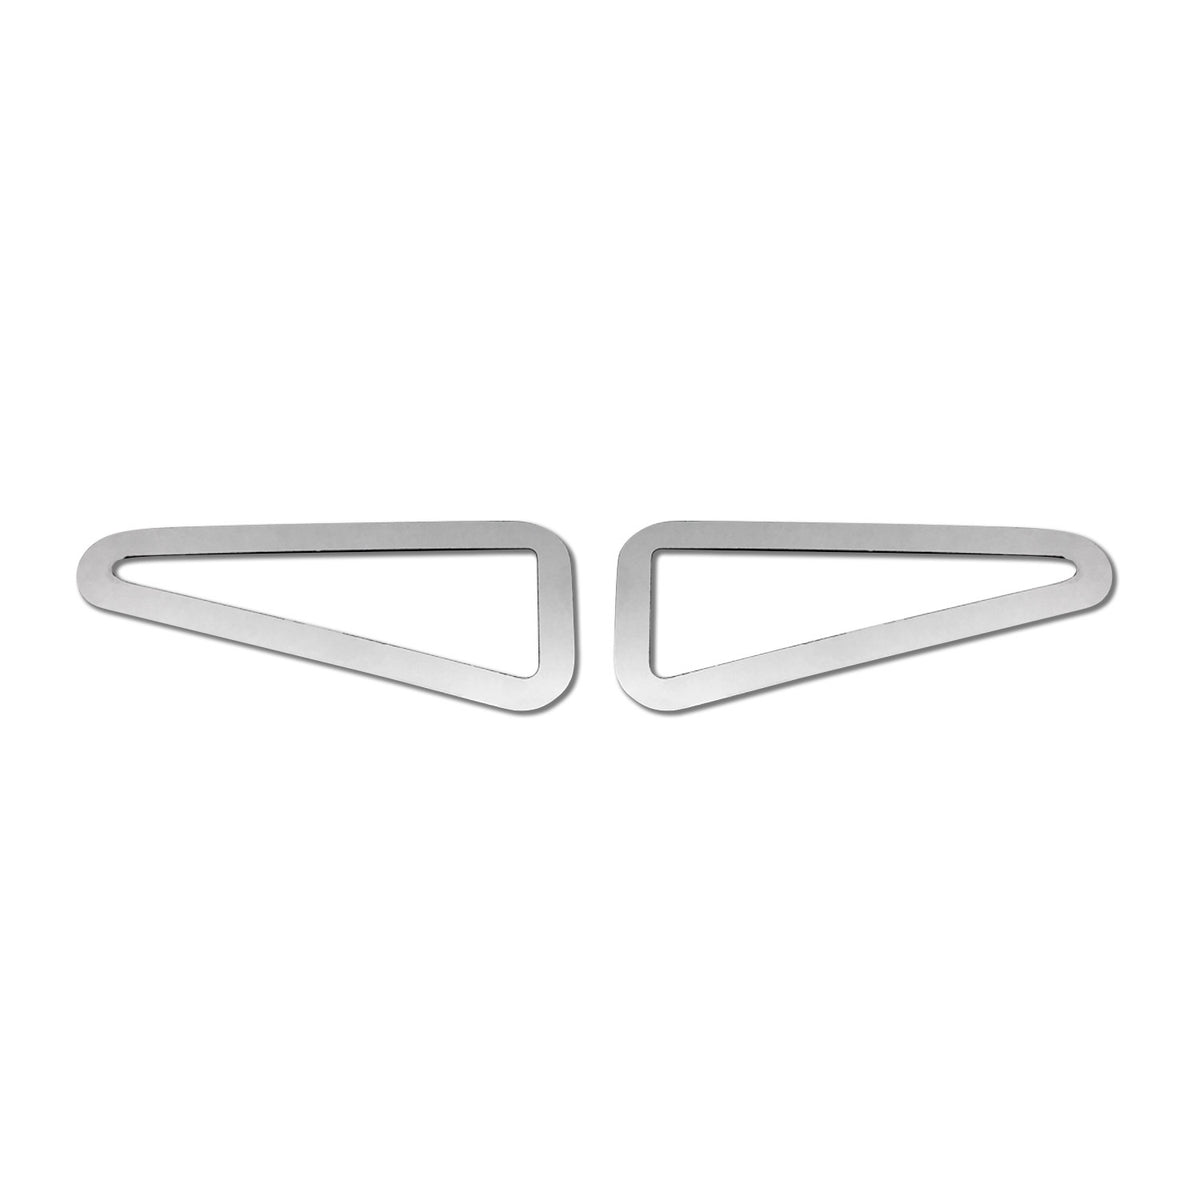 Blinkerrahmen Signalblende Blinker für Renault Avantime 2001-2002 Edelstahl 2x